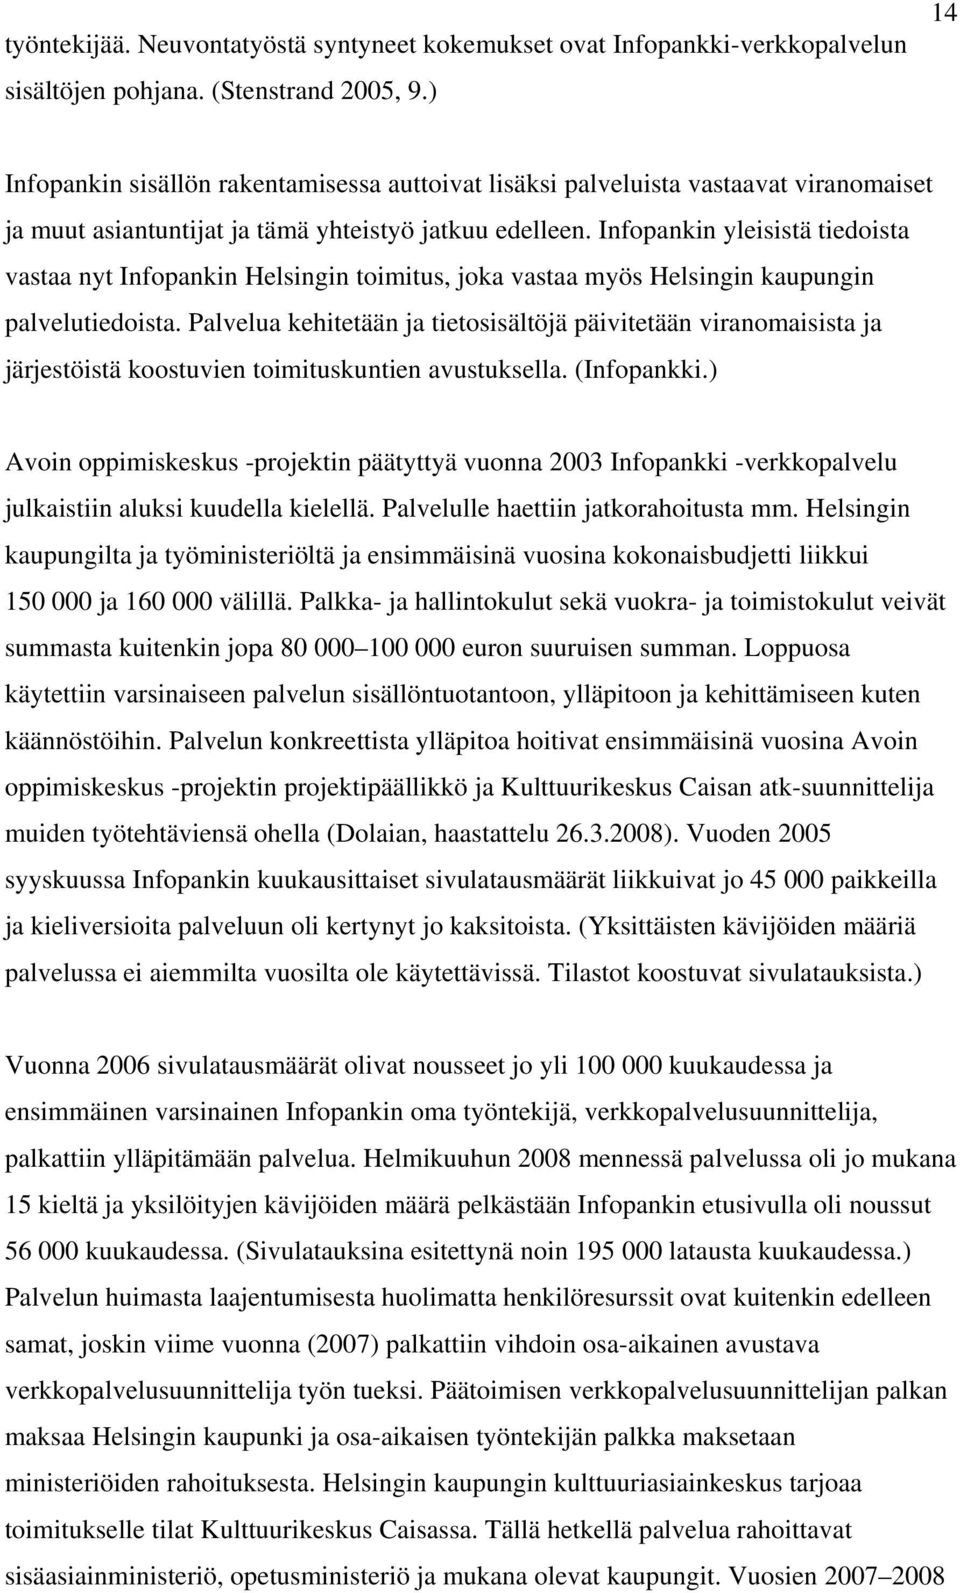 Infopankin yleisistä tiedoista vastaa nyt Infopankin Helsingin toimitus, joka vastaa myös Helsingin kaupungin palvelutiedoista.